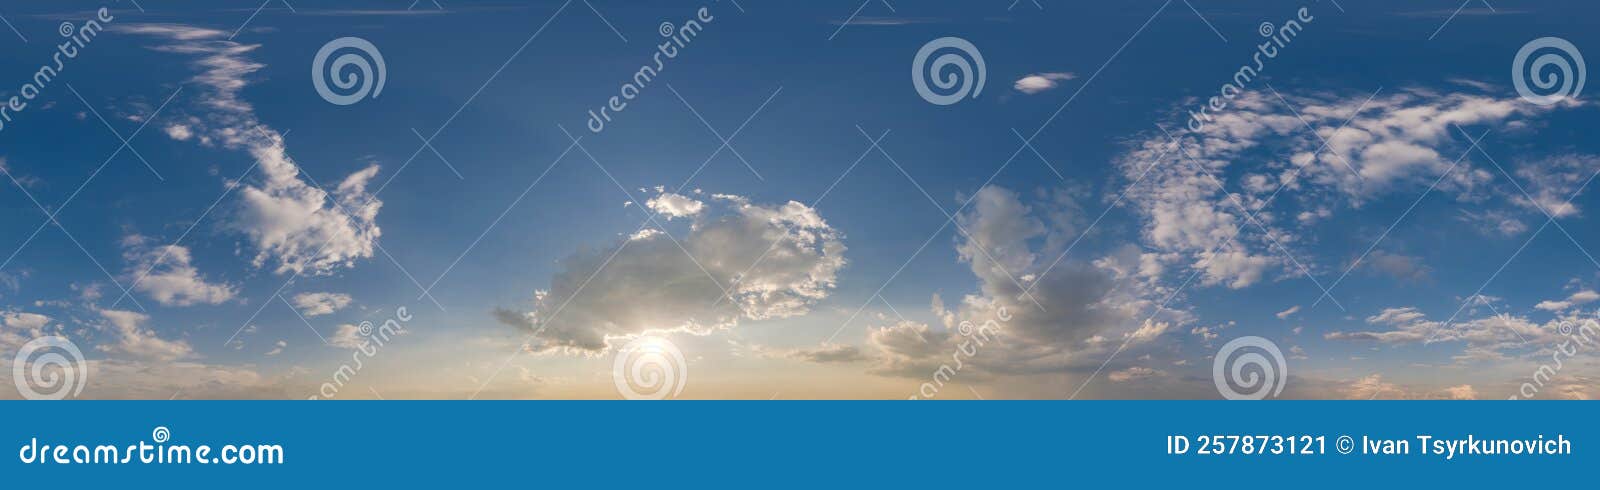 Céu nublado com nuvens como panorama hdri 360 sem costura com